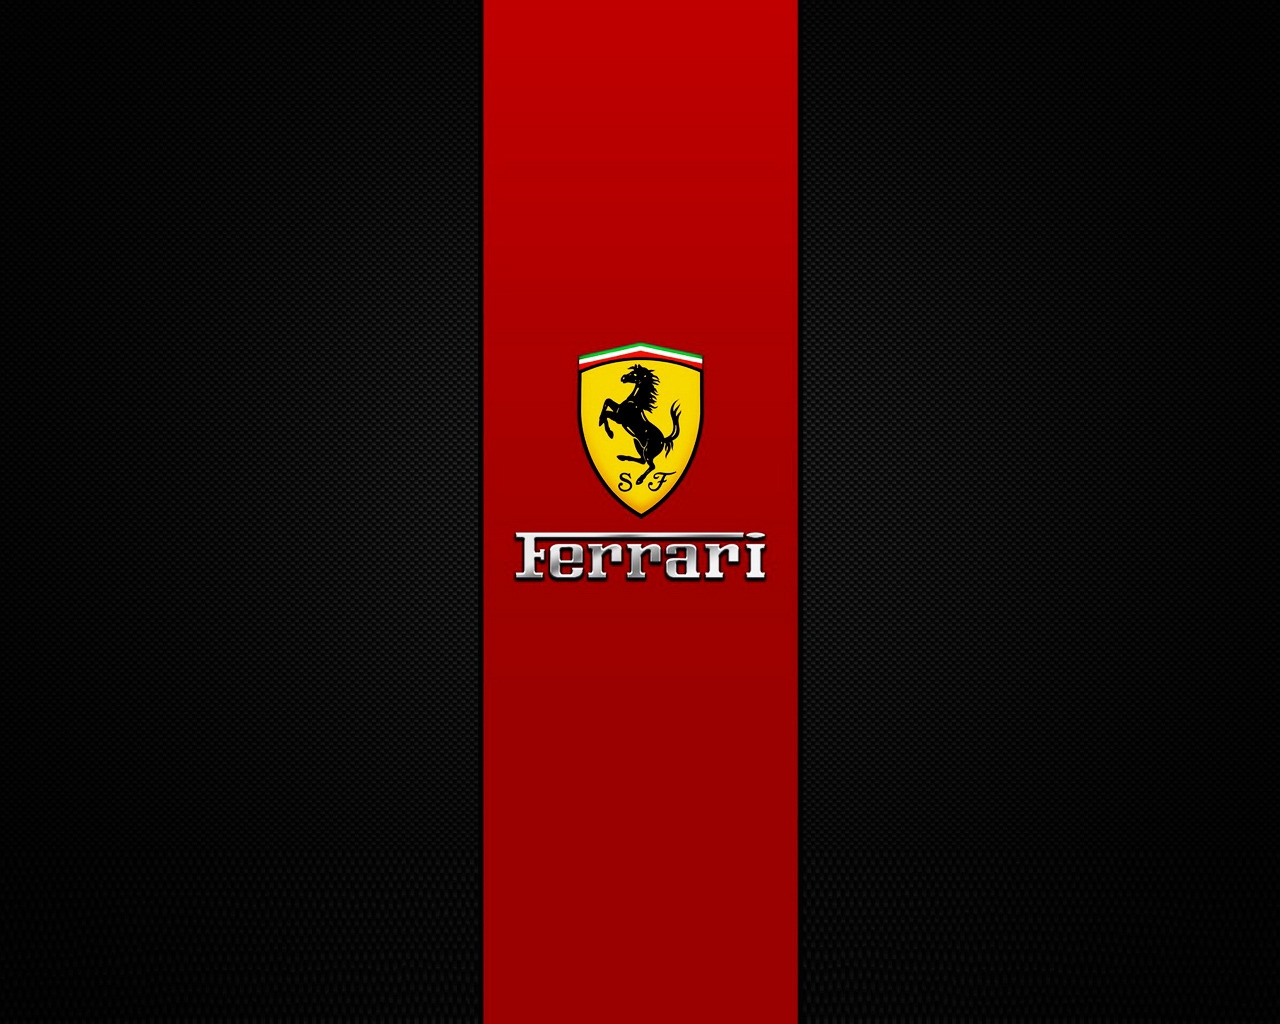 Ferrari Brand Logo for 1280 x 1024 resolution